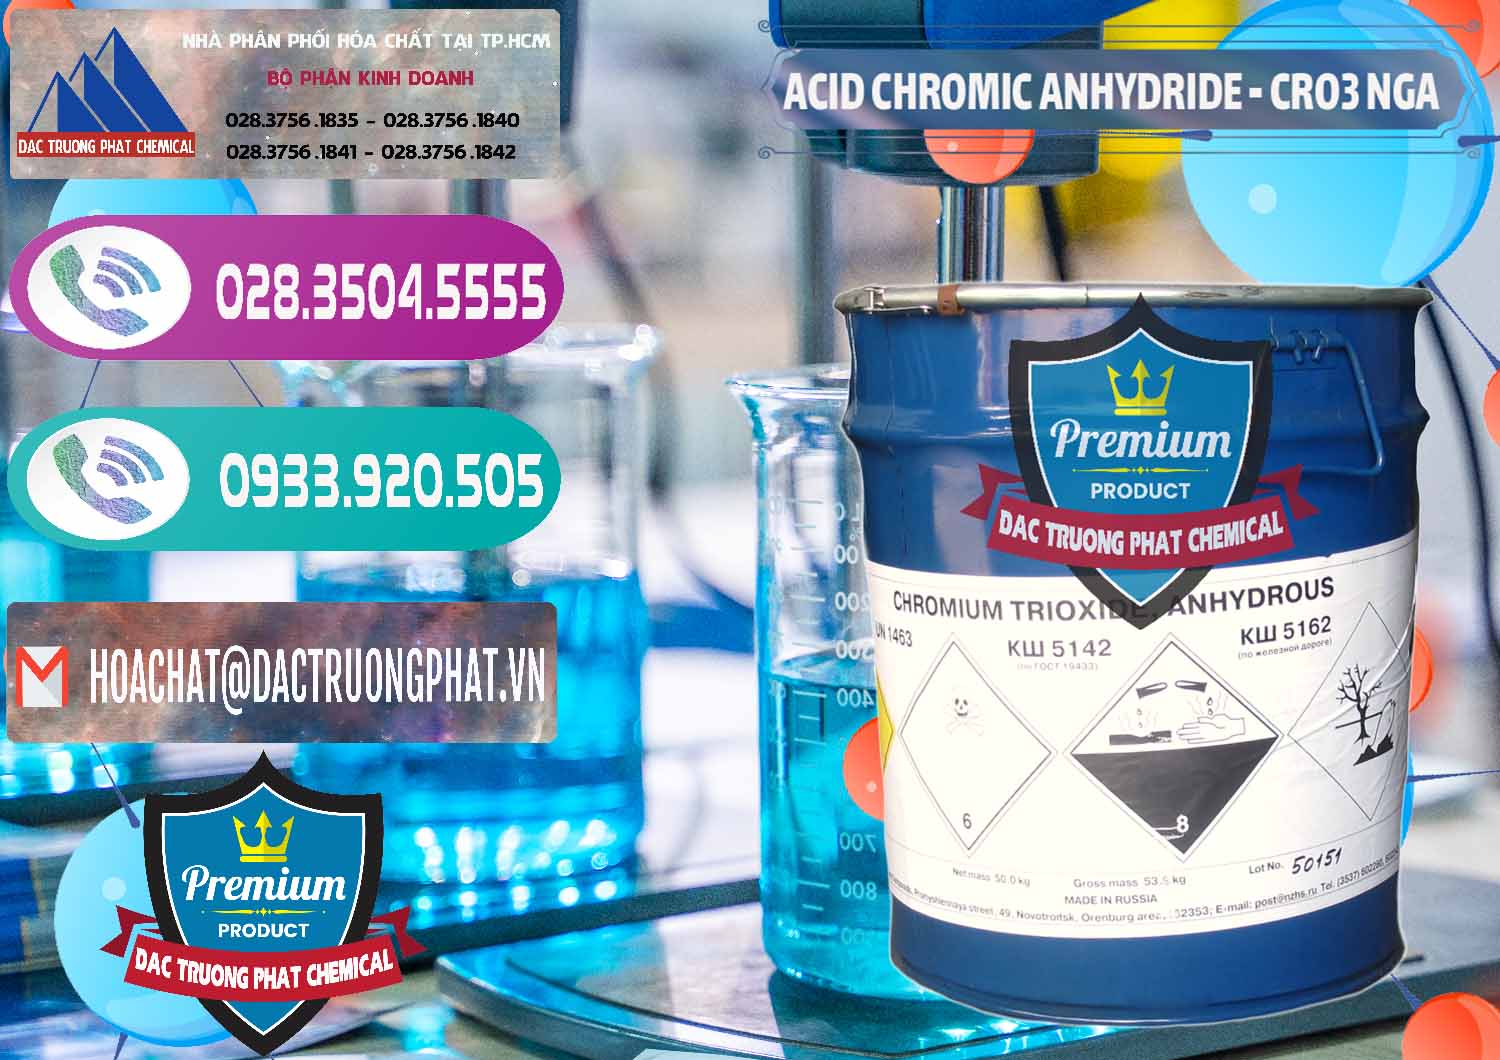 Nơi phân phối ( bán ) Acid Chromic Anhydride - Cromic CRO3 Nga Russia - 0006 - Nhà phân phối - kinh doanh hóa chất tại TP.HCM - hoachatxulynuoc.com